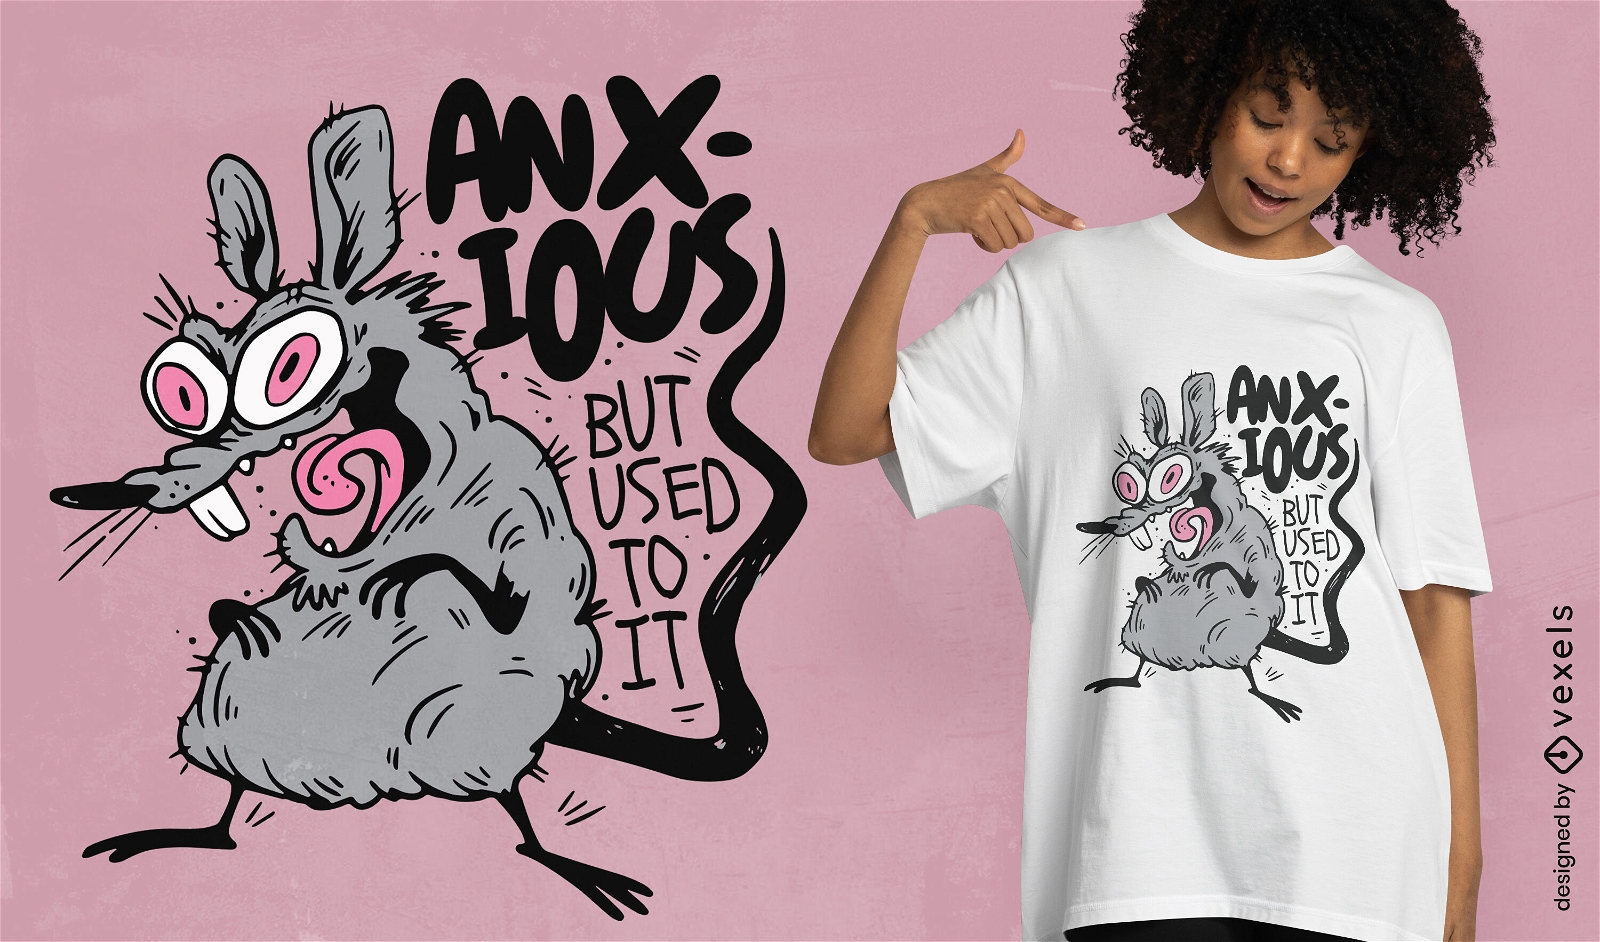 Anxious rat animal funny t-shirt design